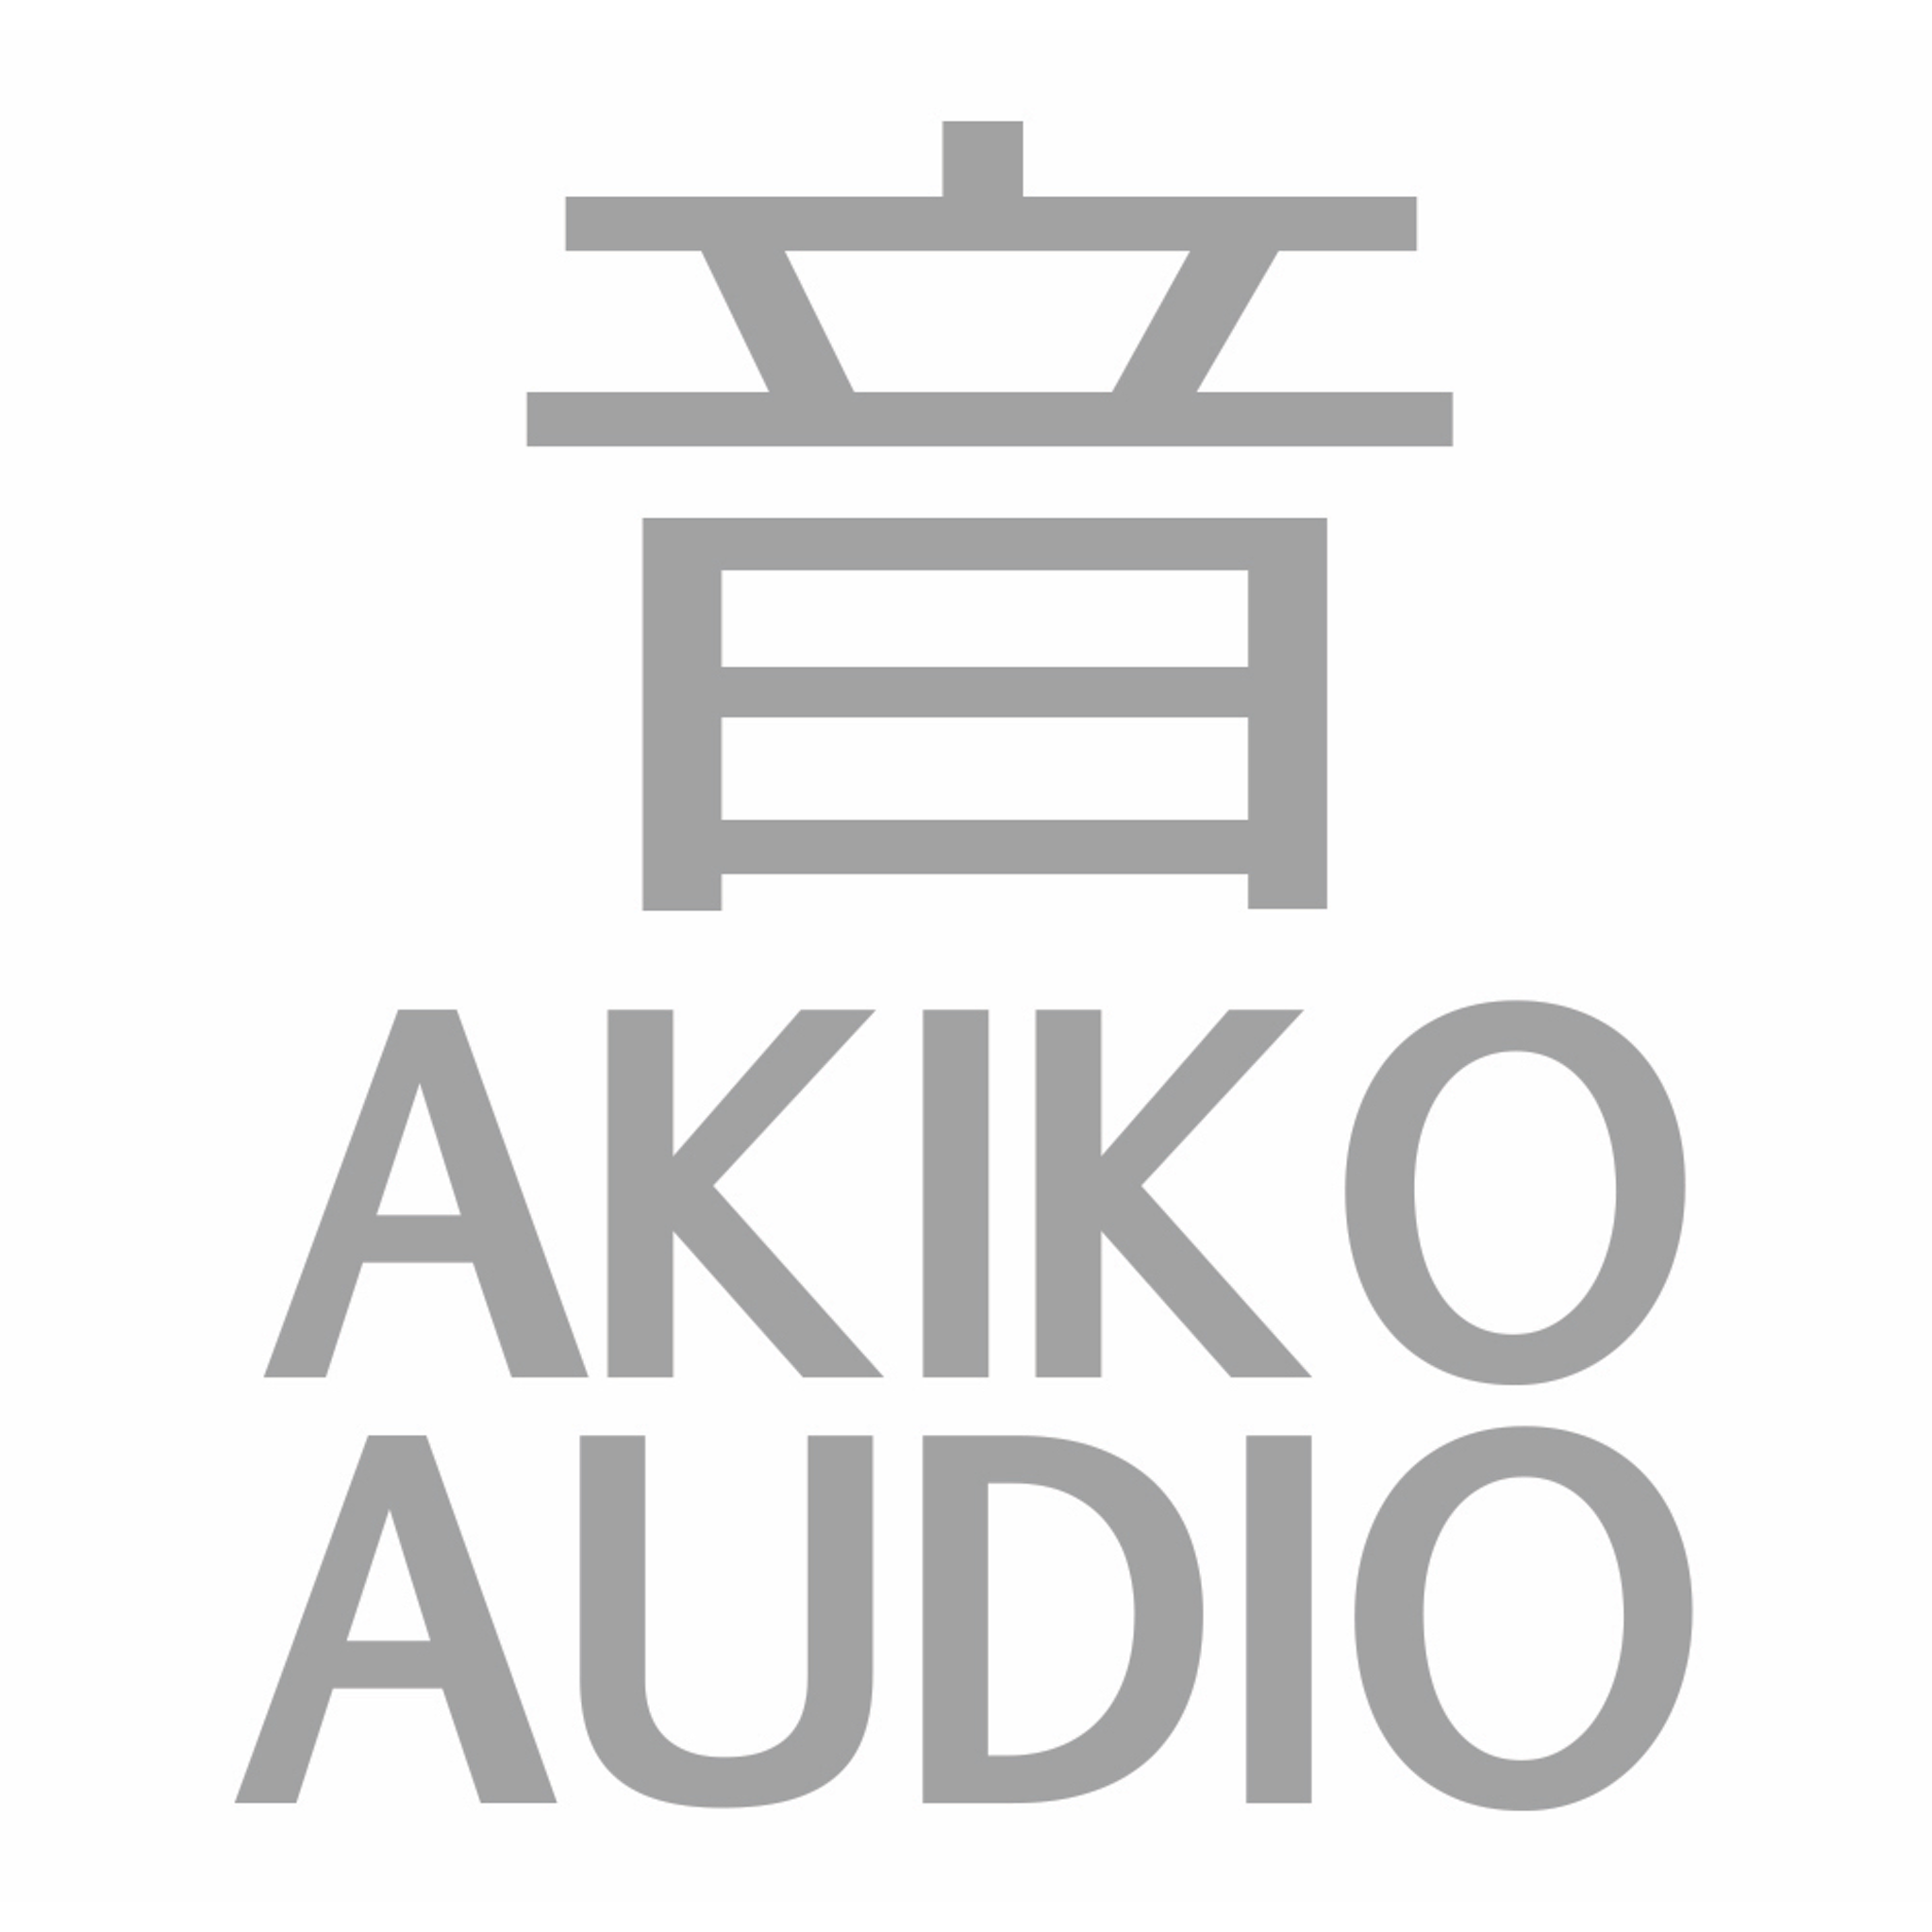 Akiko Audio logo